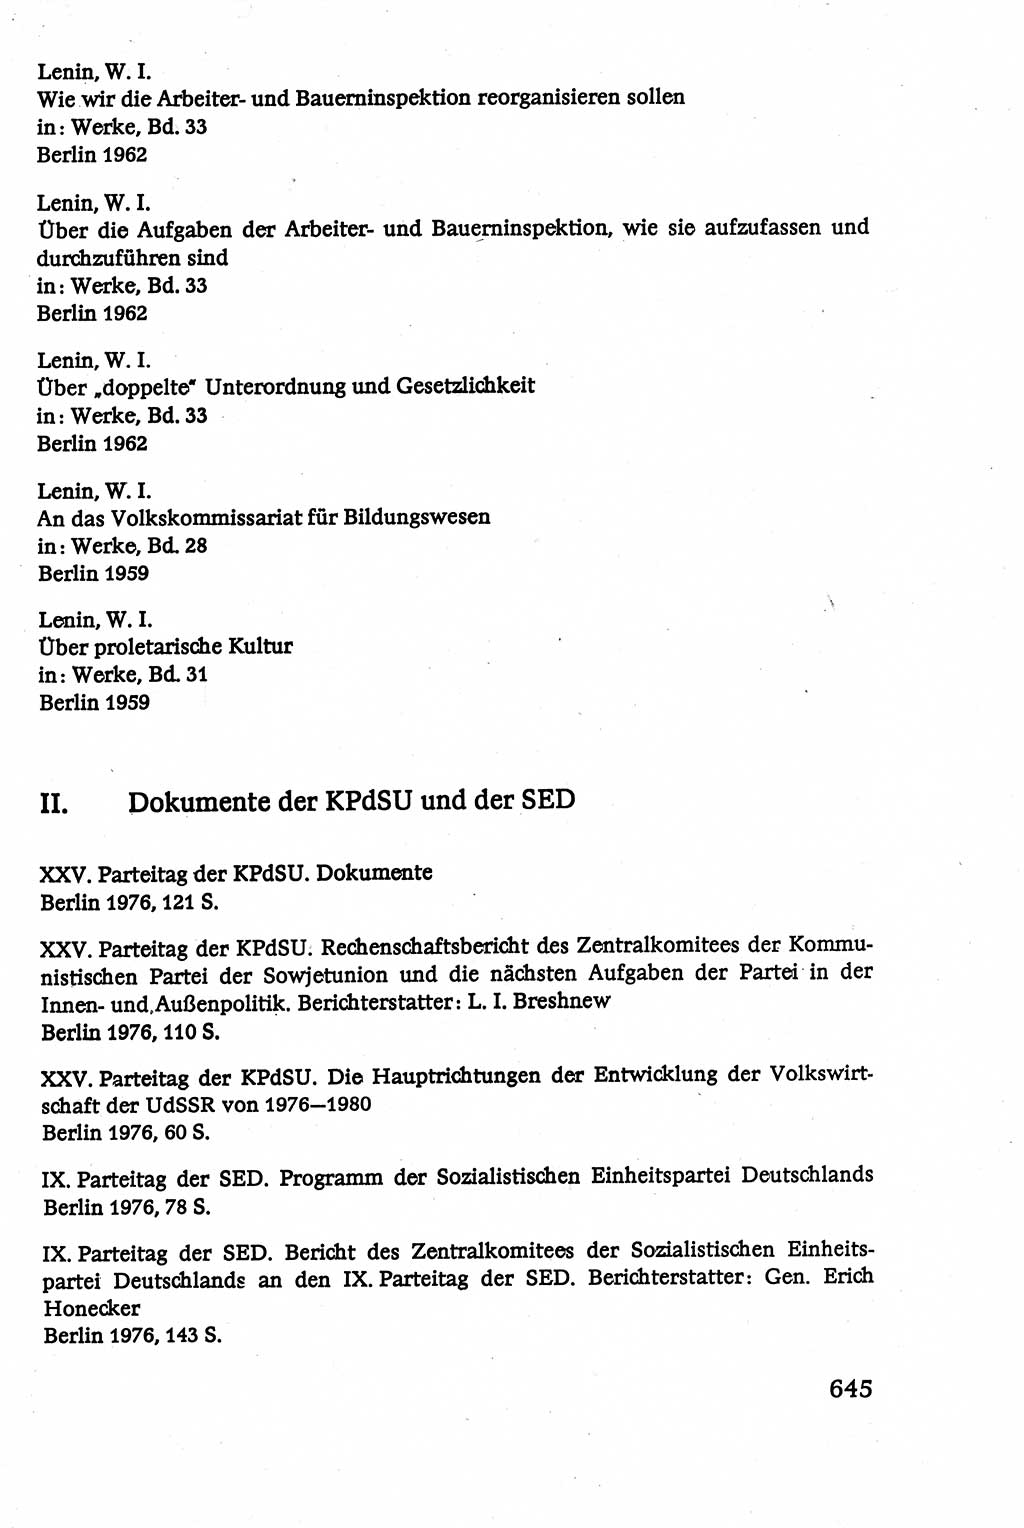 Verwaltungsrecht [Deutsche Demokratische Republik (DDR)], Lehrbuch 1979, Seite 645 (Verw.-R. DDR Lb. 1979, S. 645)